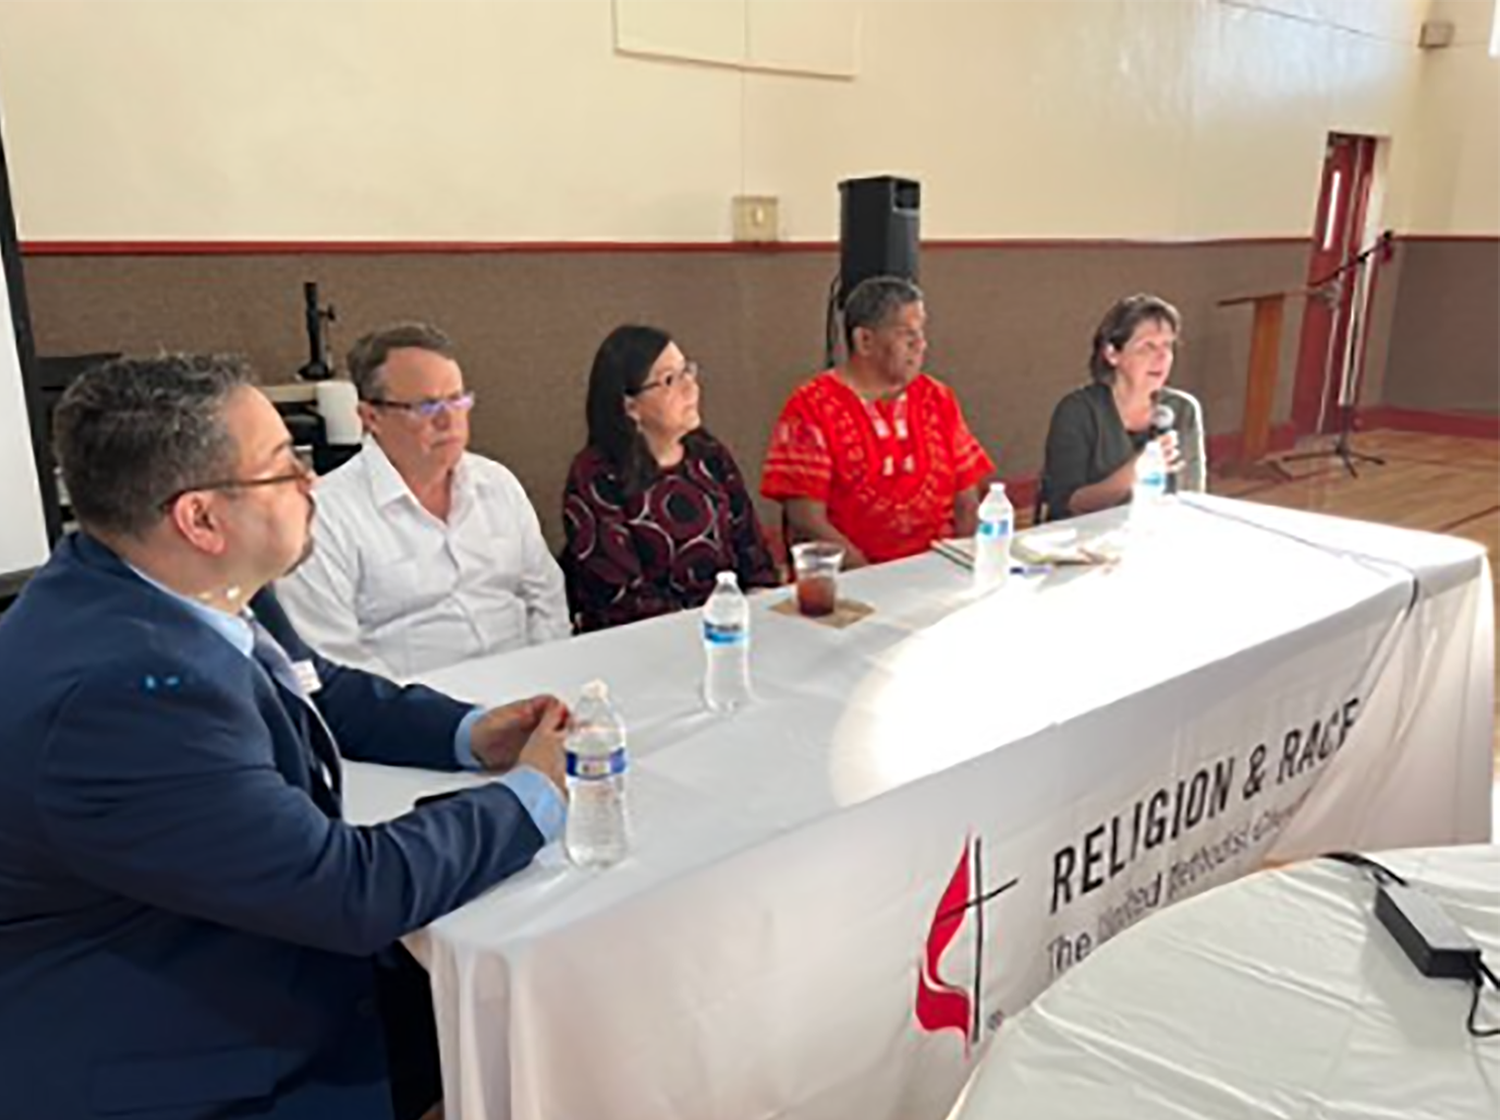 El Rev. Dr. Giovanni Arroyo secretario general de GCORR, al extremo izquierdo, dirige un panel de discusión con los/as reverendos/as John Feagins, Raquel Feagins, James Amerson y Cynthia Engstrom, de izquierda a derecha. Foto cortesía de GCORR.